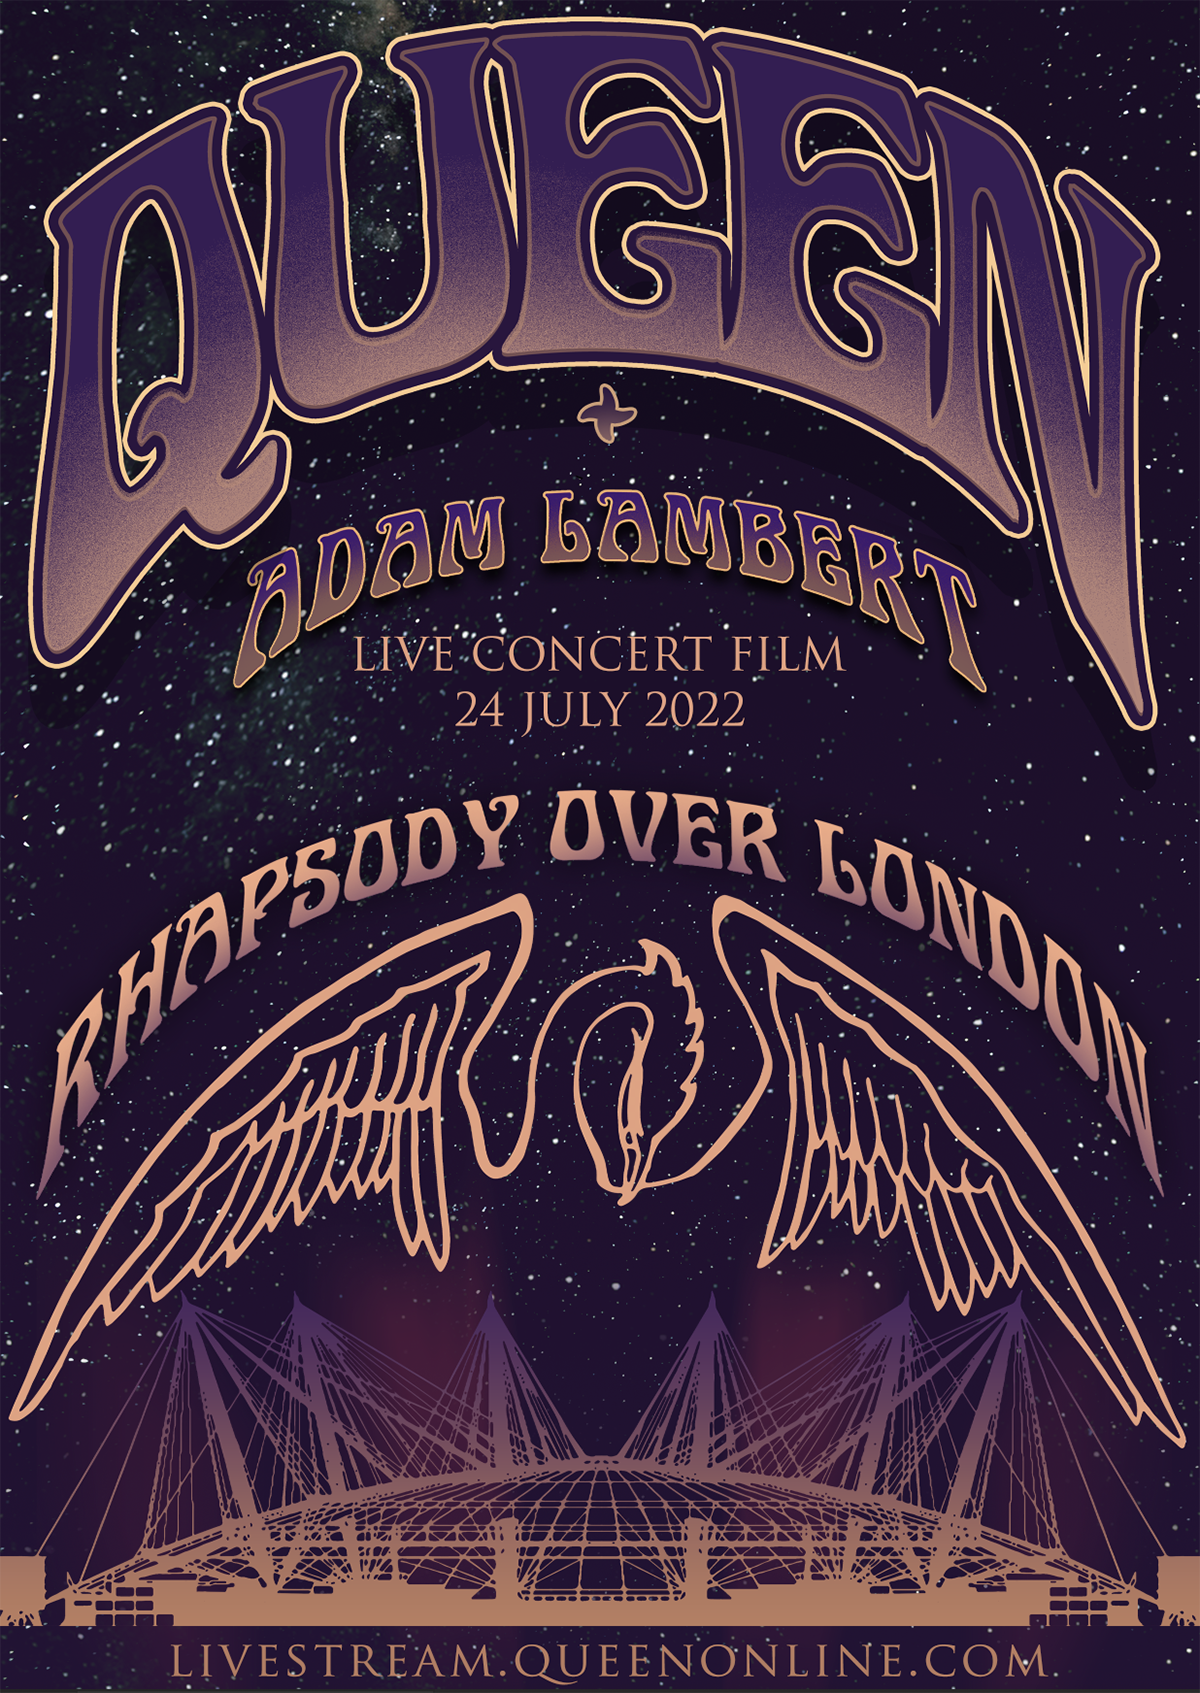 Queen + Adam Lambert Announce ‘Rhapsody Over London’ 